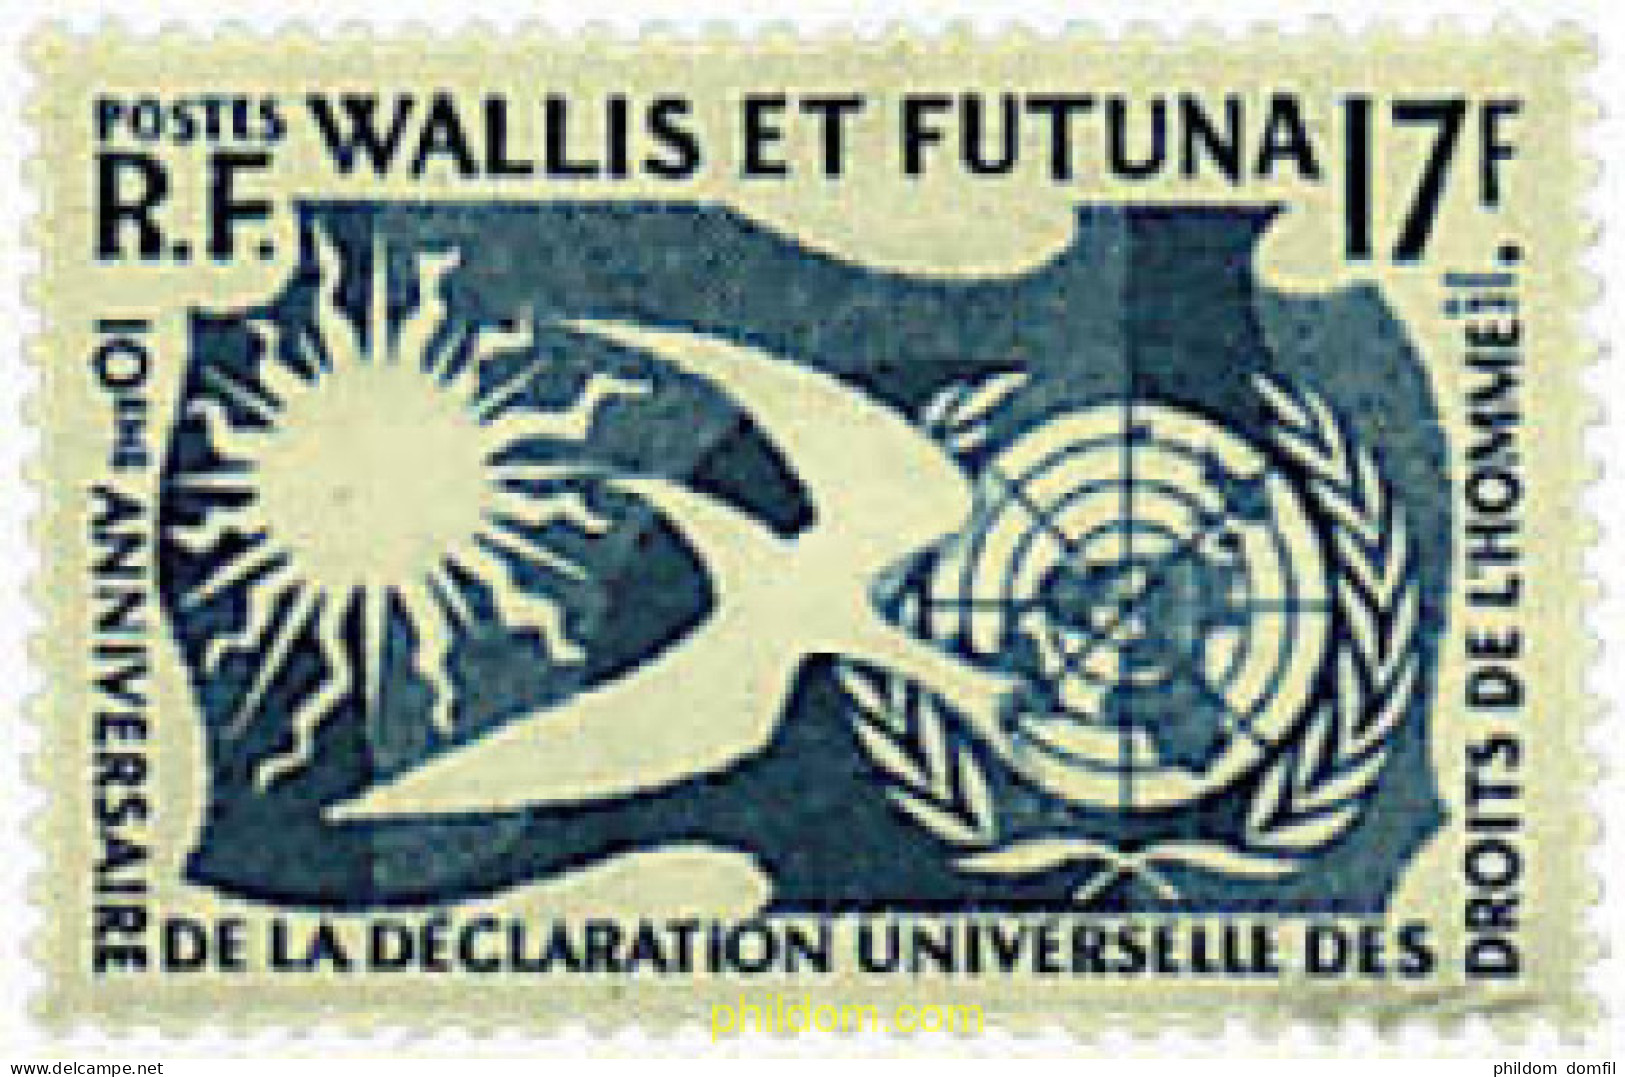 33889 MNH WALLIS Y FUTUNA 1958 10 ANIVERSARIO DE LA DECLARACION UNIVERSAL DE LOS DERECHOS HUMANOS - Unused Stamps